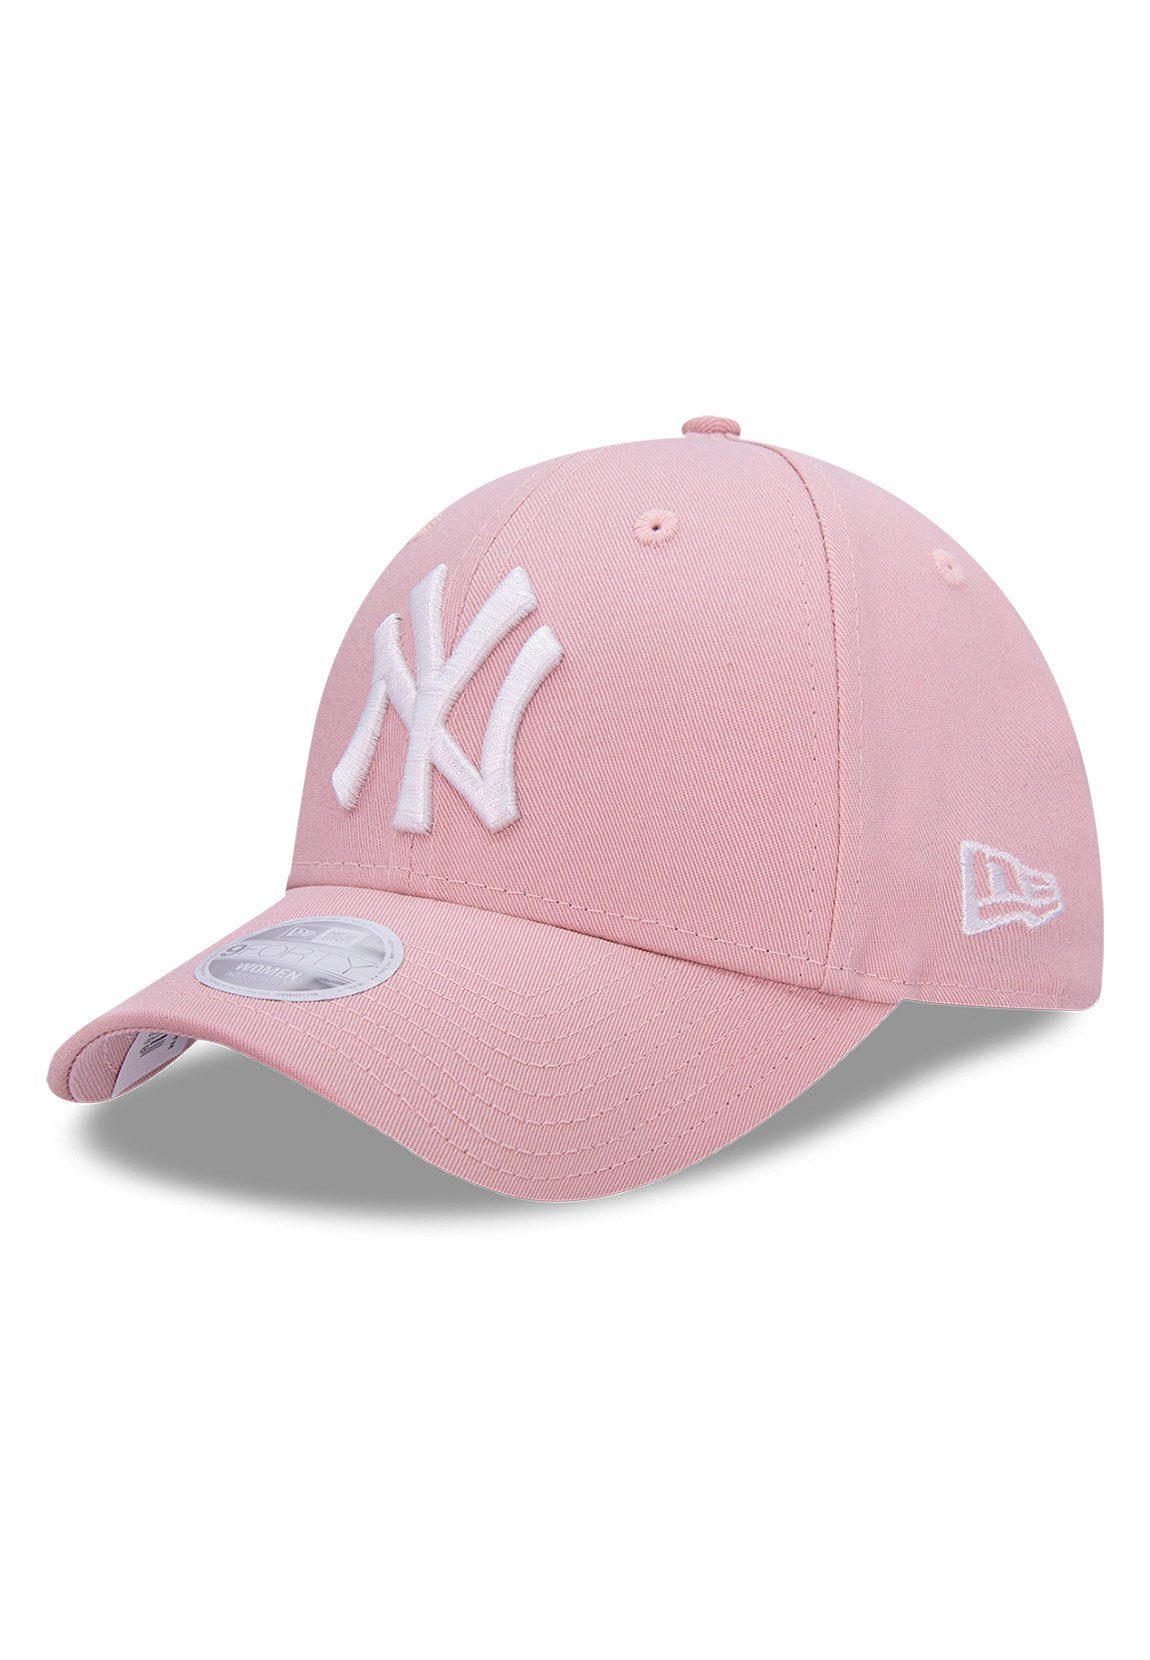 New Era Baseball Cap »New Era Wmns Color Damen 9Forty Adjustable Cap NY  YANKEES Rosa« online kaufen | OTTO